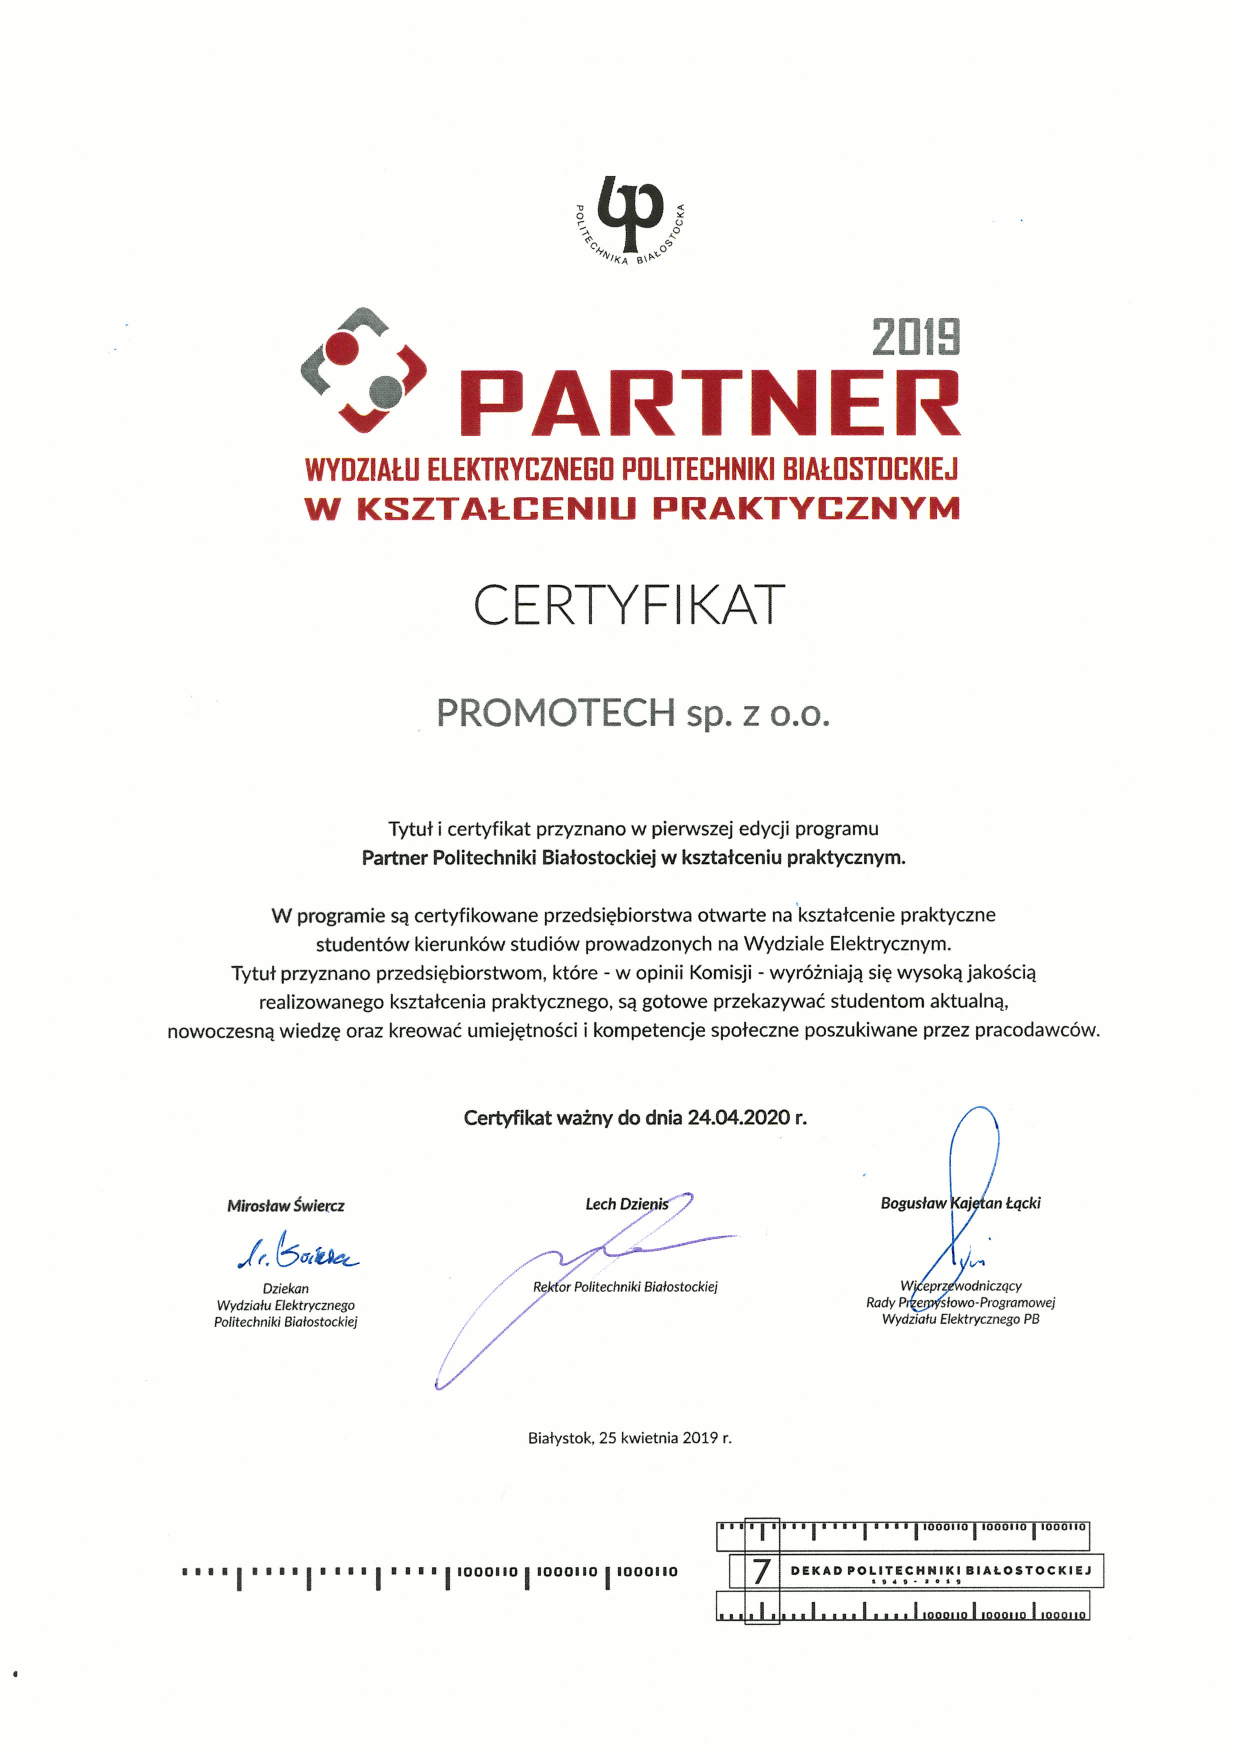 Certyfikat Partnera w kształceniu praktycznym - Promotech Sp. z o.o.